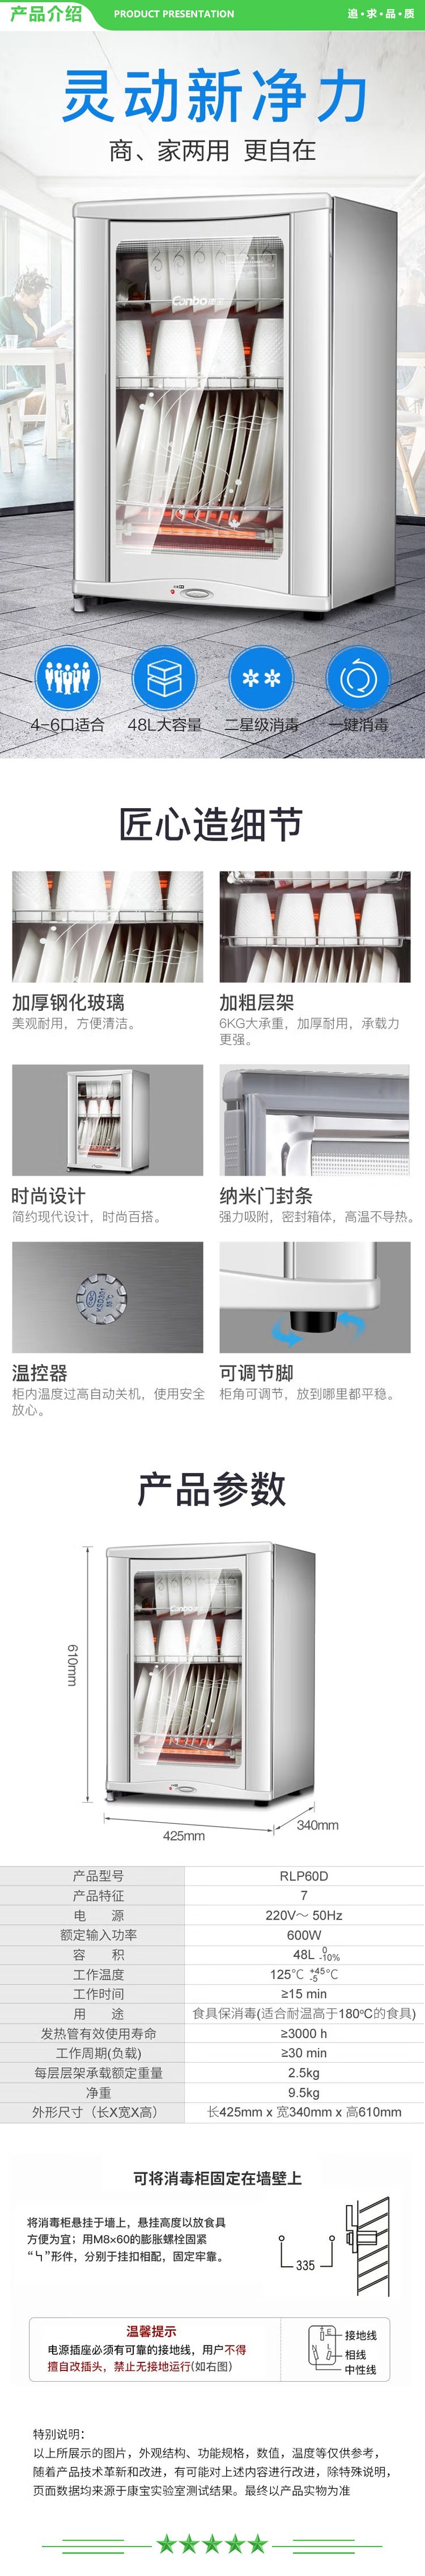 康宝 Canbo XDR50-D7 RLP60D-7 消毒柜碗柜小型立式台式家用桌面消毒柜 .jpg